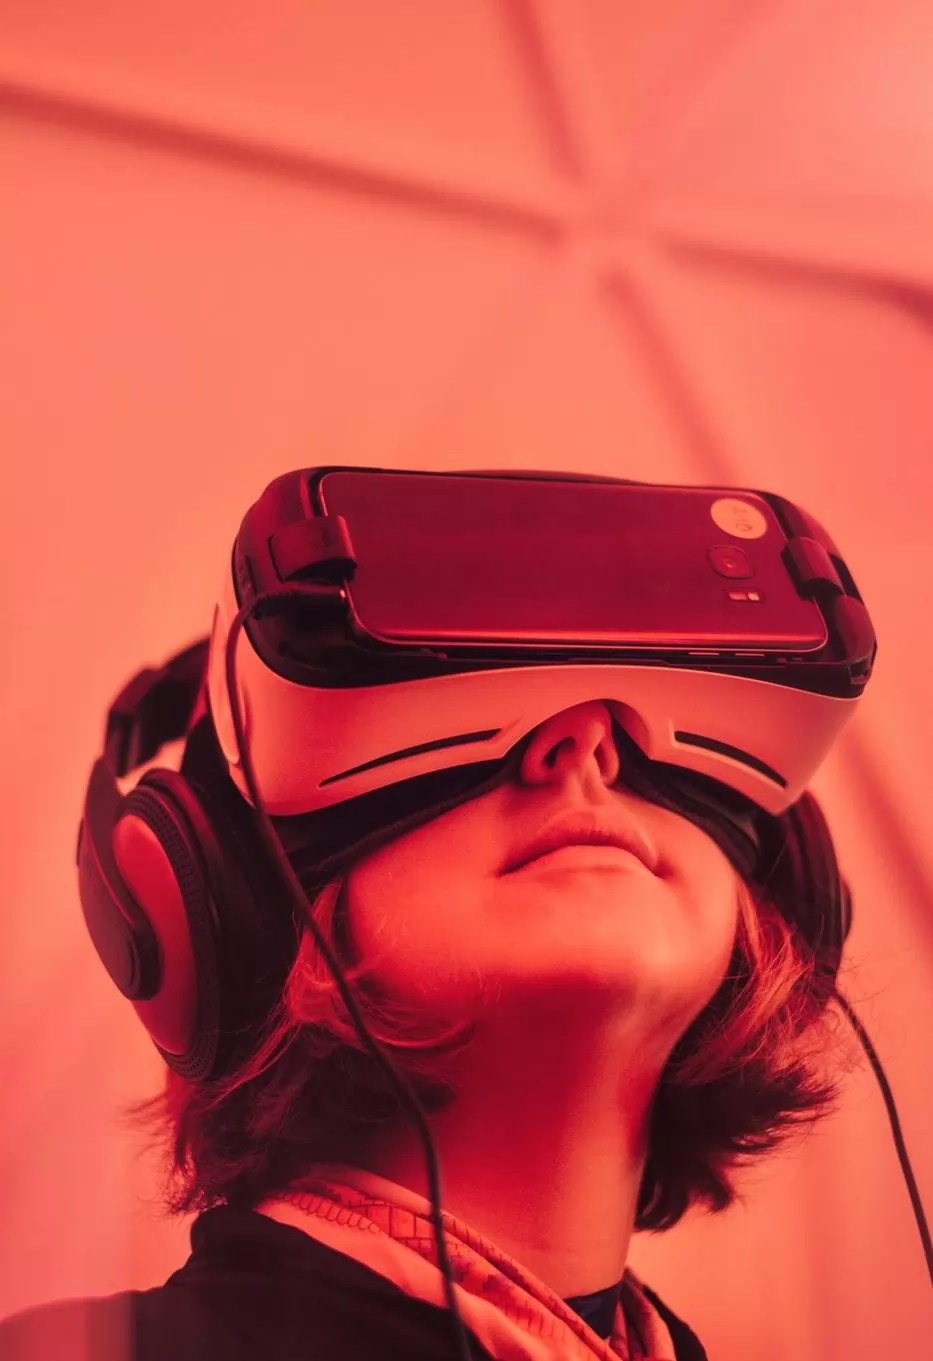 el mercado de la realidad aumentada, virtual y mixta